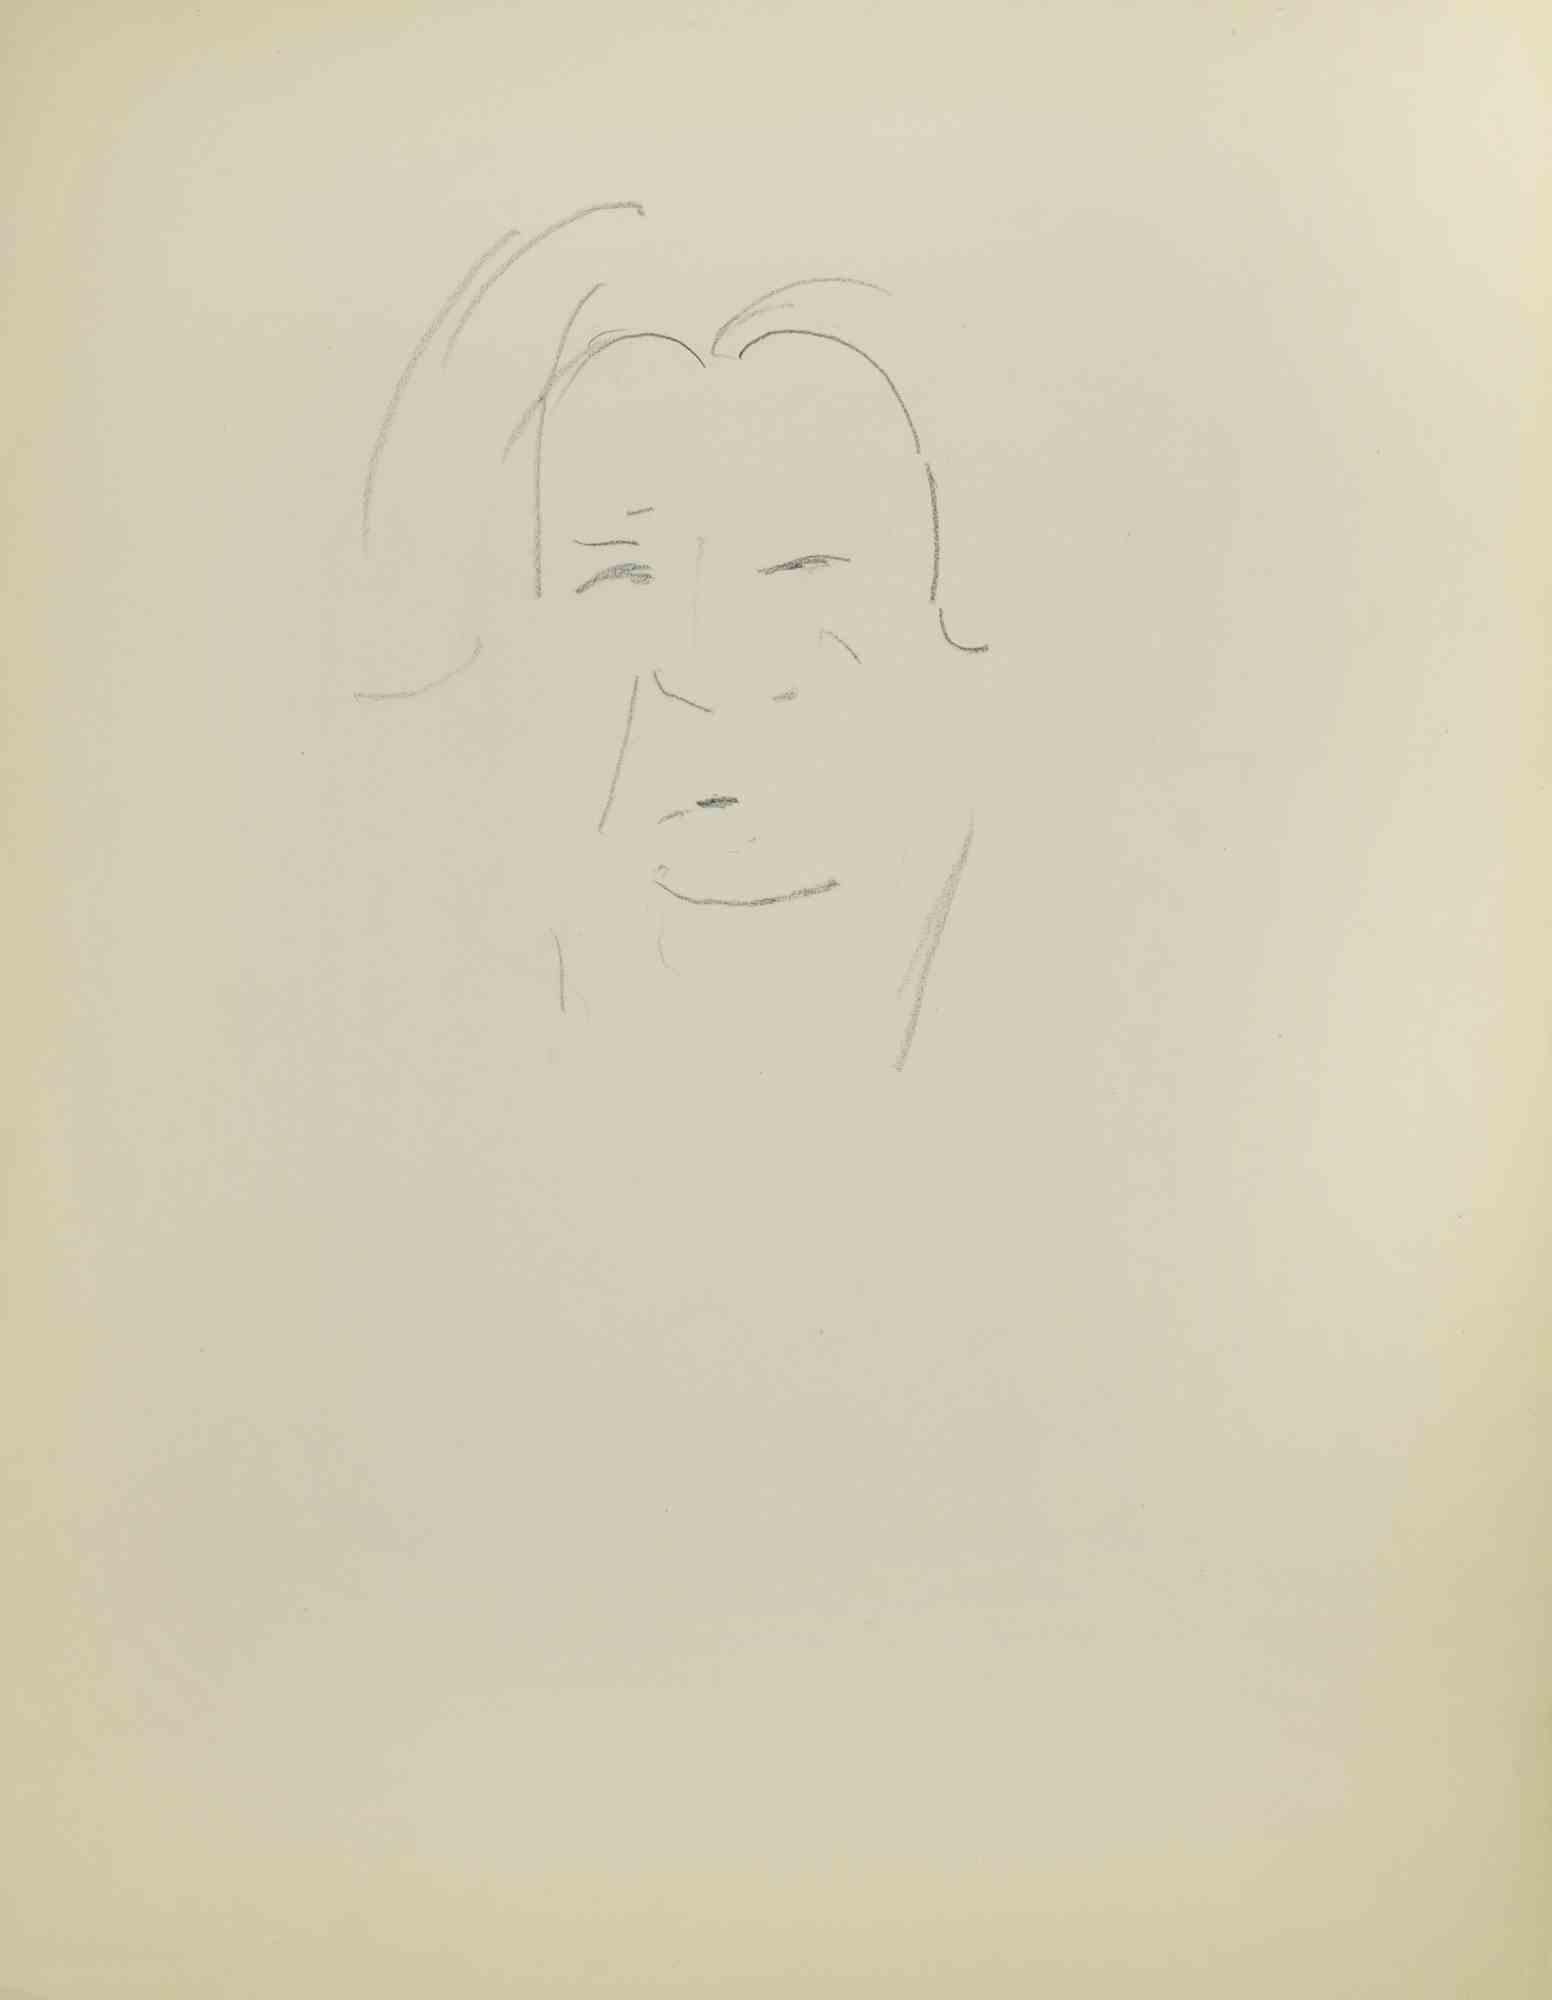 Sketch for a Portrait ist eine Zeichnung auf Papier, die Mitte des 20. Jahrhunderts von Flor David angefertigt wurde.

Bleistift auf cremefarbenem Papier.

Gute Bedingungen.

Flor David (1891-1958) ): Pseudonym von David Florence. Pastellmaler. Er